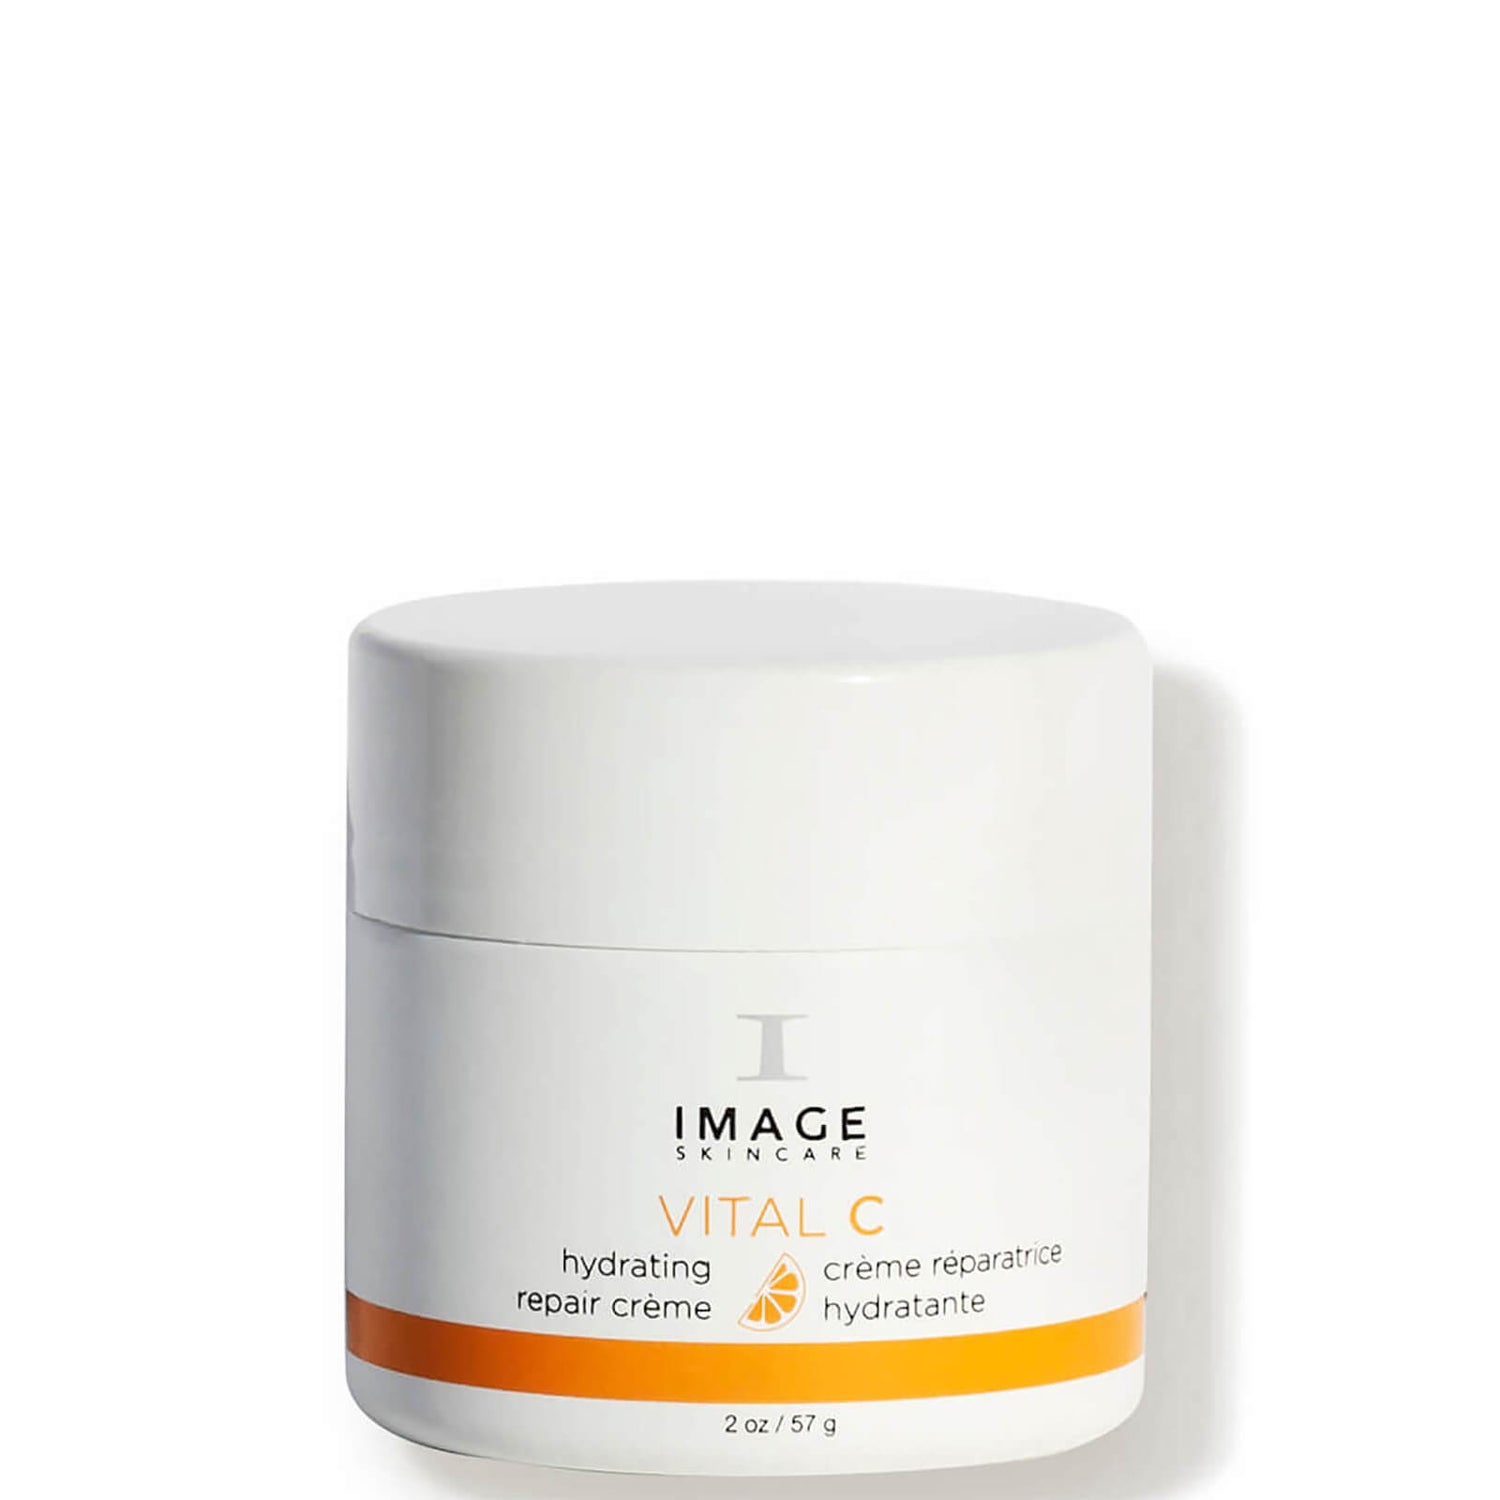 IMAGE Skincare VITAL C Hydrating Repair Creme (2 oz.)